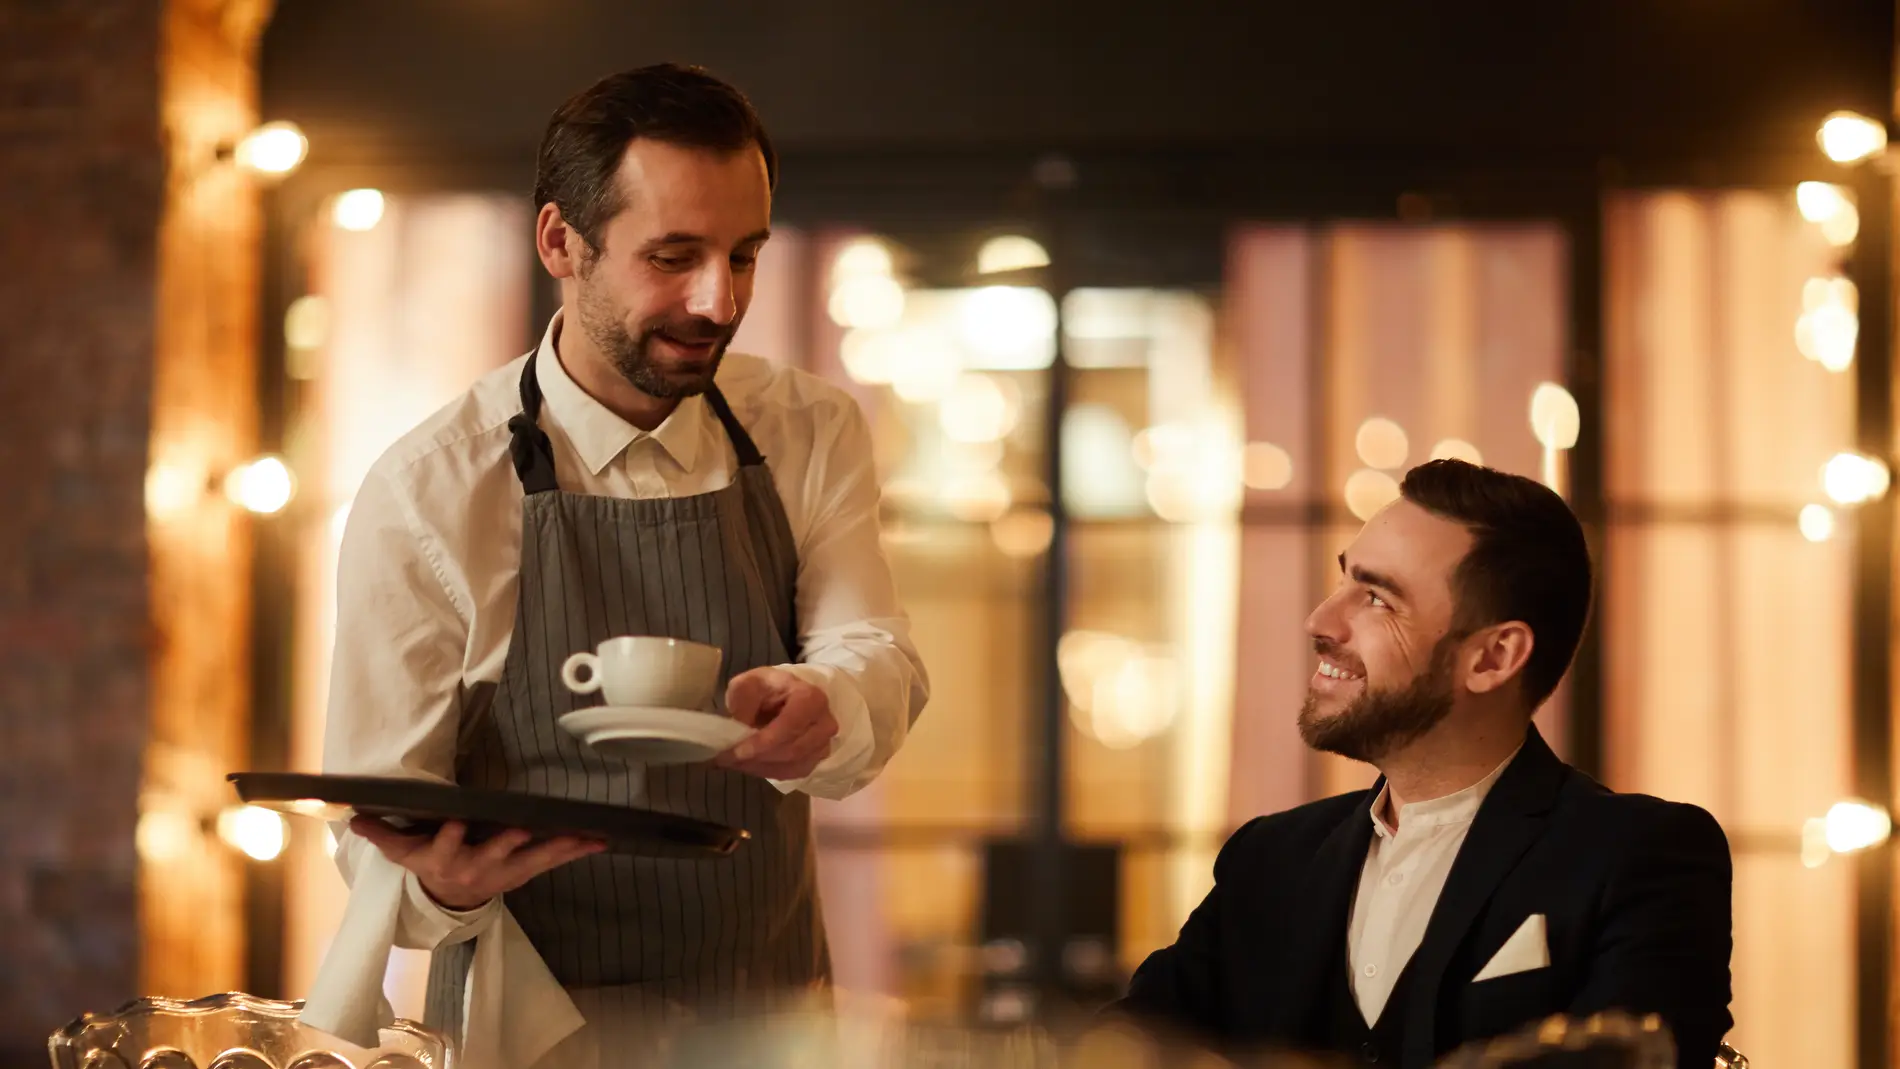 ¿Qué tipo de restaurantes prefieren los clientes más respetuosos? La extraña teoría que se ha vuelto viral